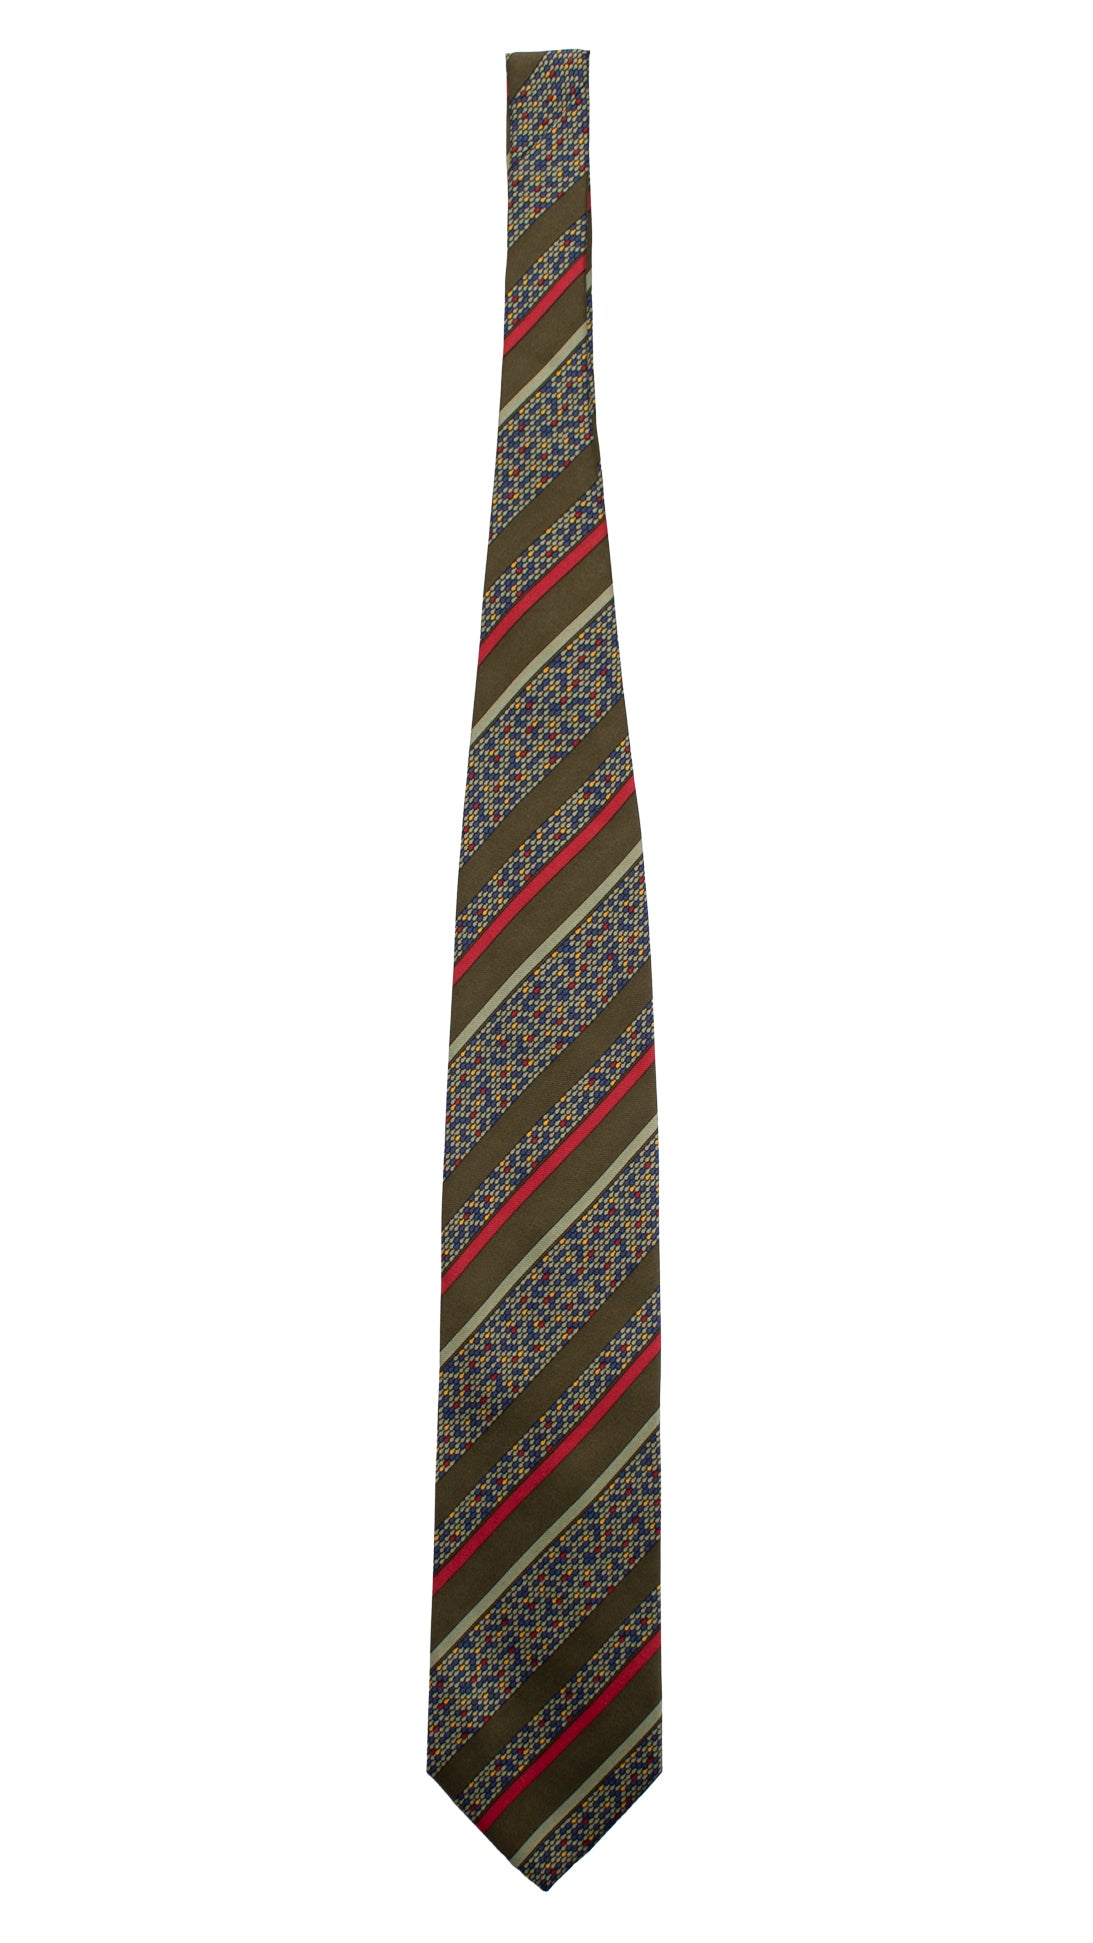 Cravatta Vintage Regimental in Twill di Seta Verde A Righe Multicolor CV794 Intera